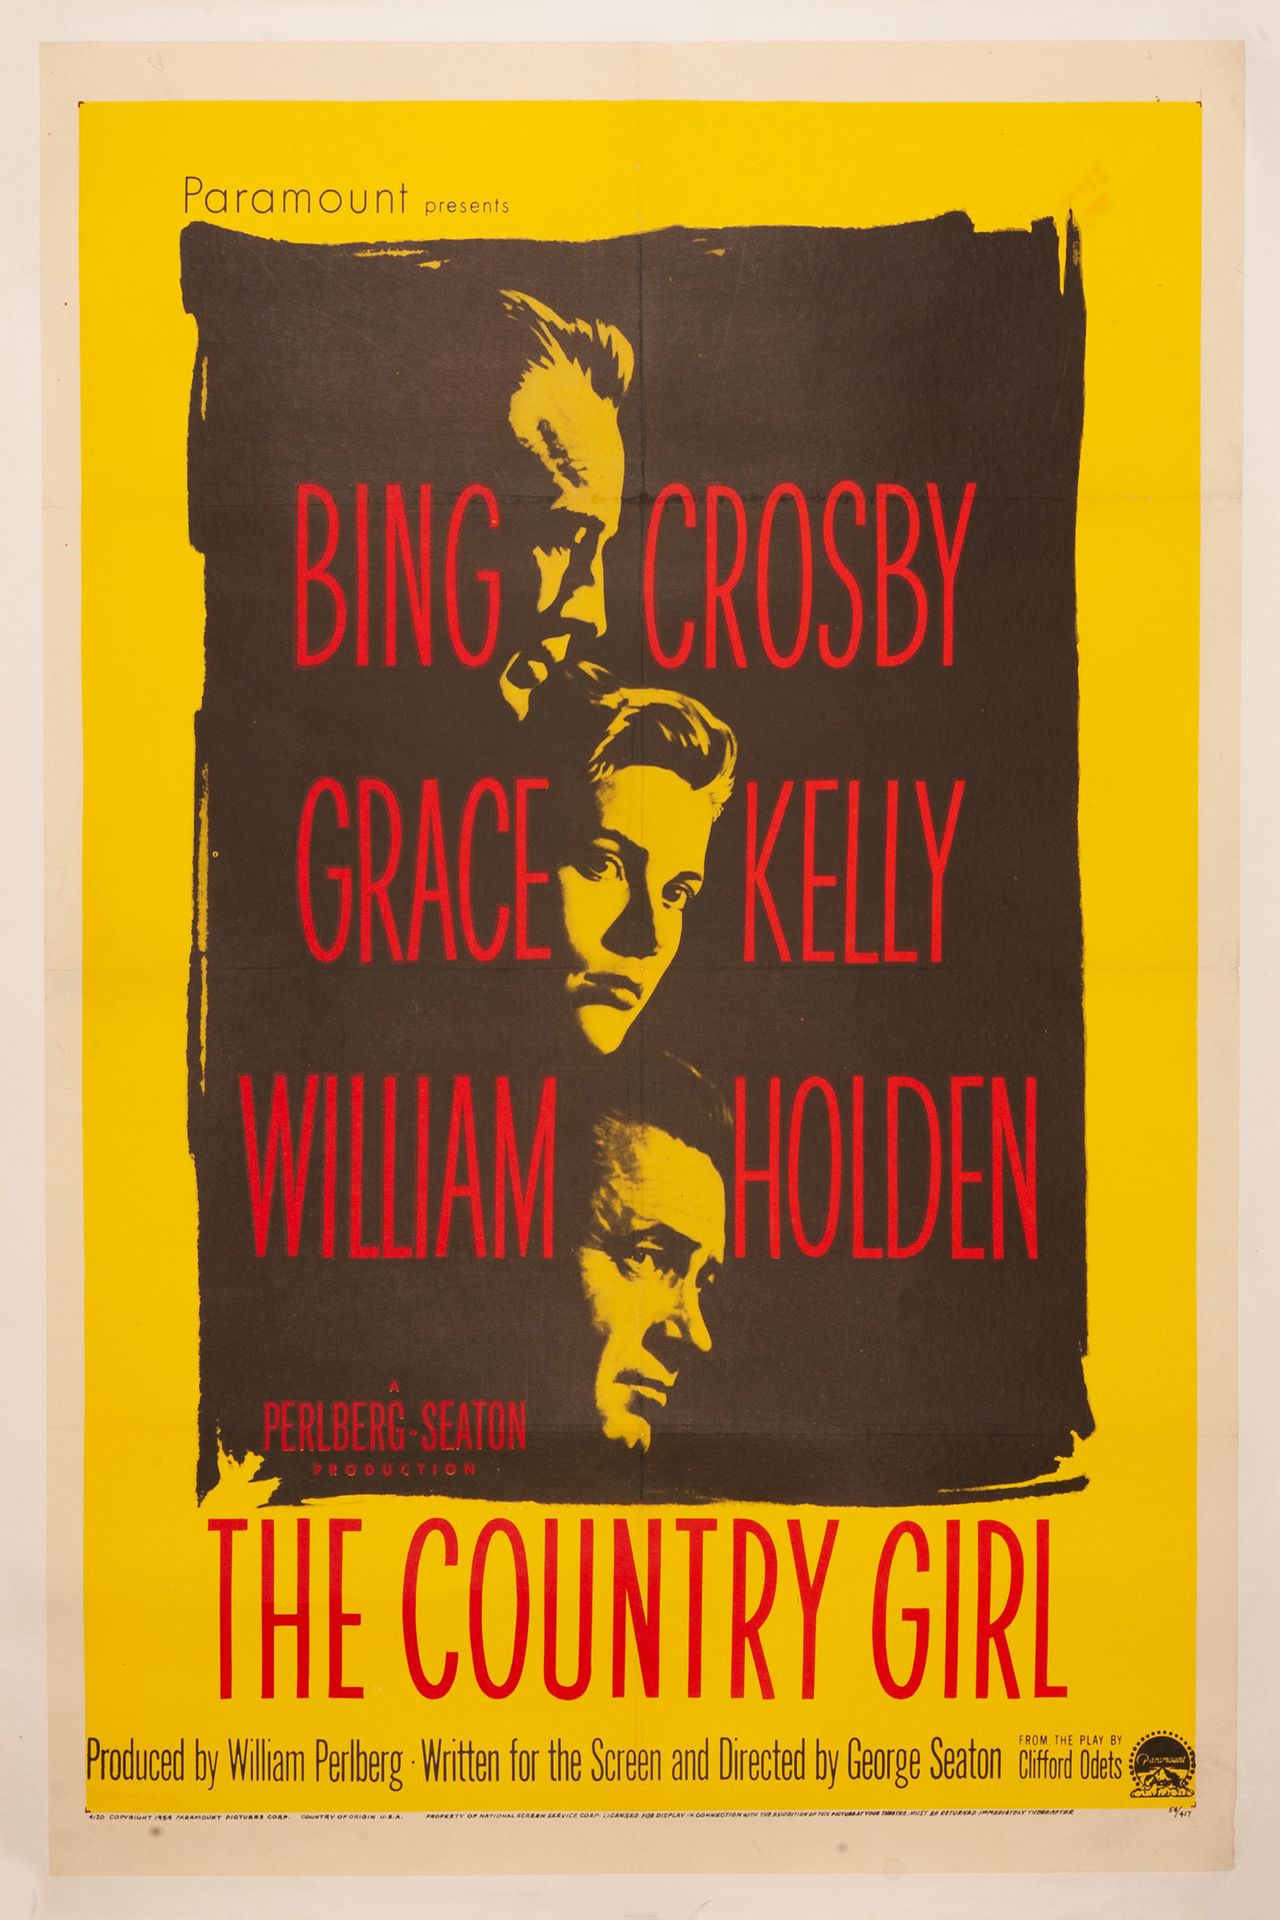 Null 乡村女郎》 乔治-西顿。1954年。
69 x 104 cm (One sheet)。美国海报。无符号。没有印记。
包裹。条件A-